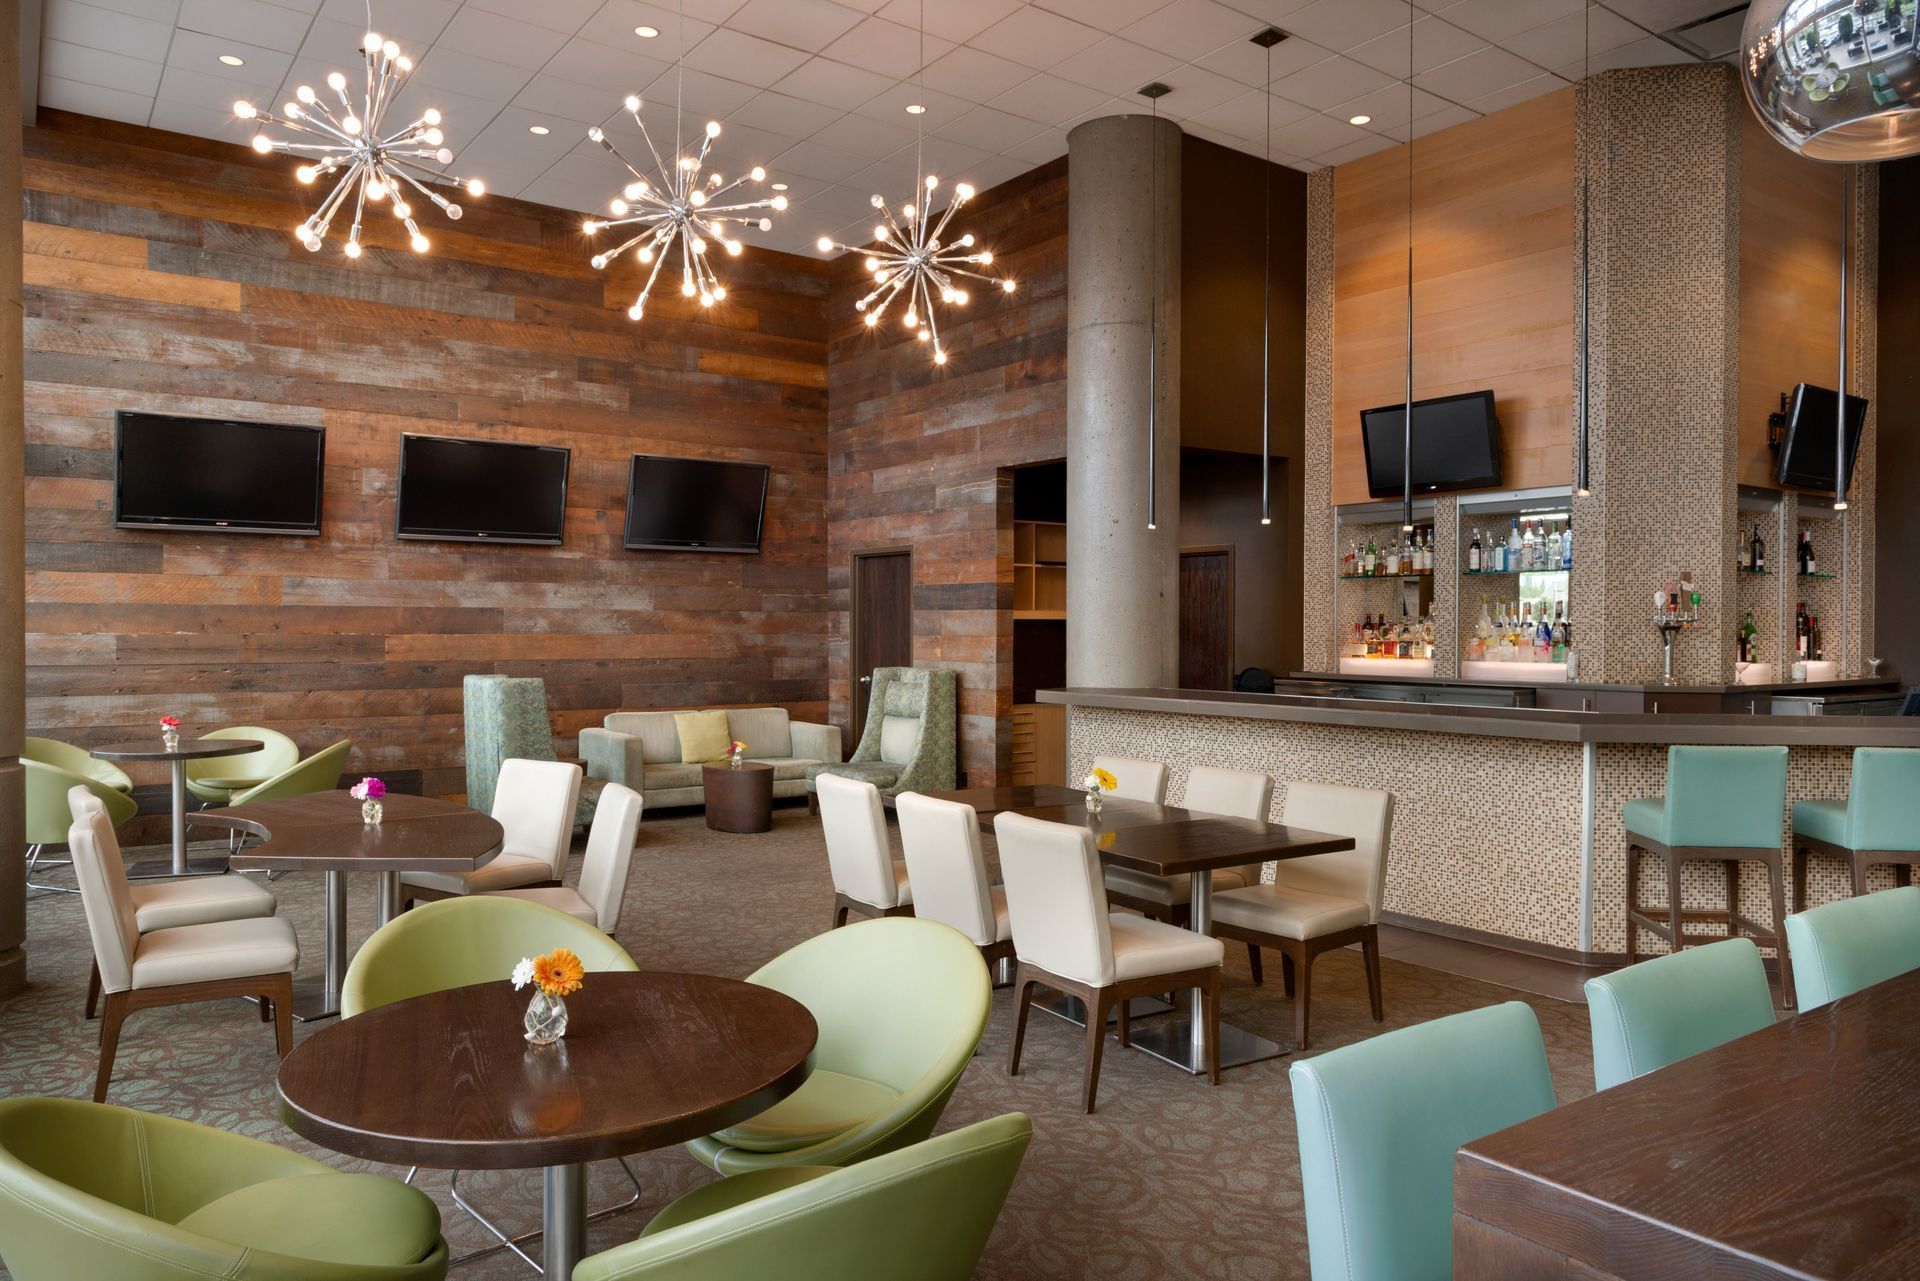 Restaurant Lounge | Chilliwack Restaurant